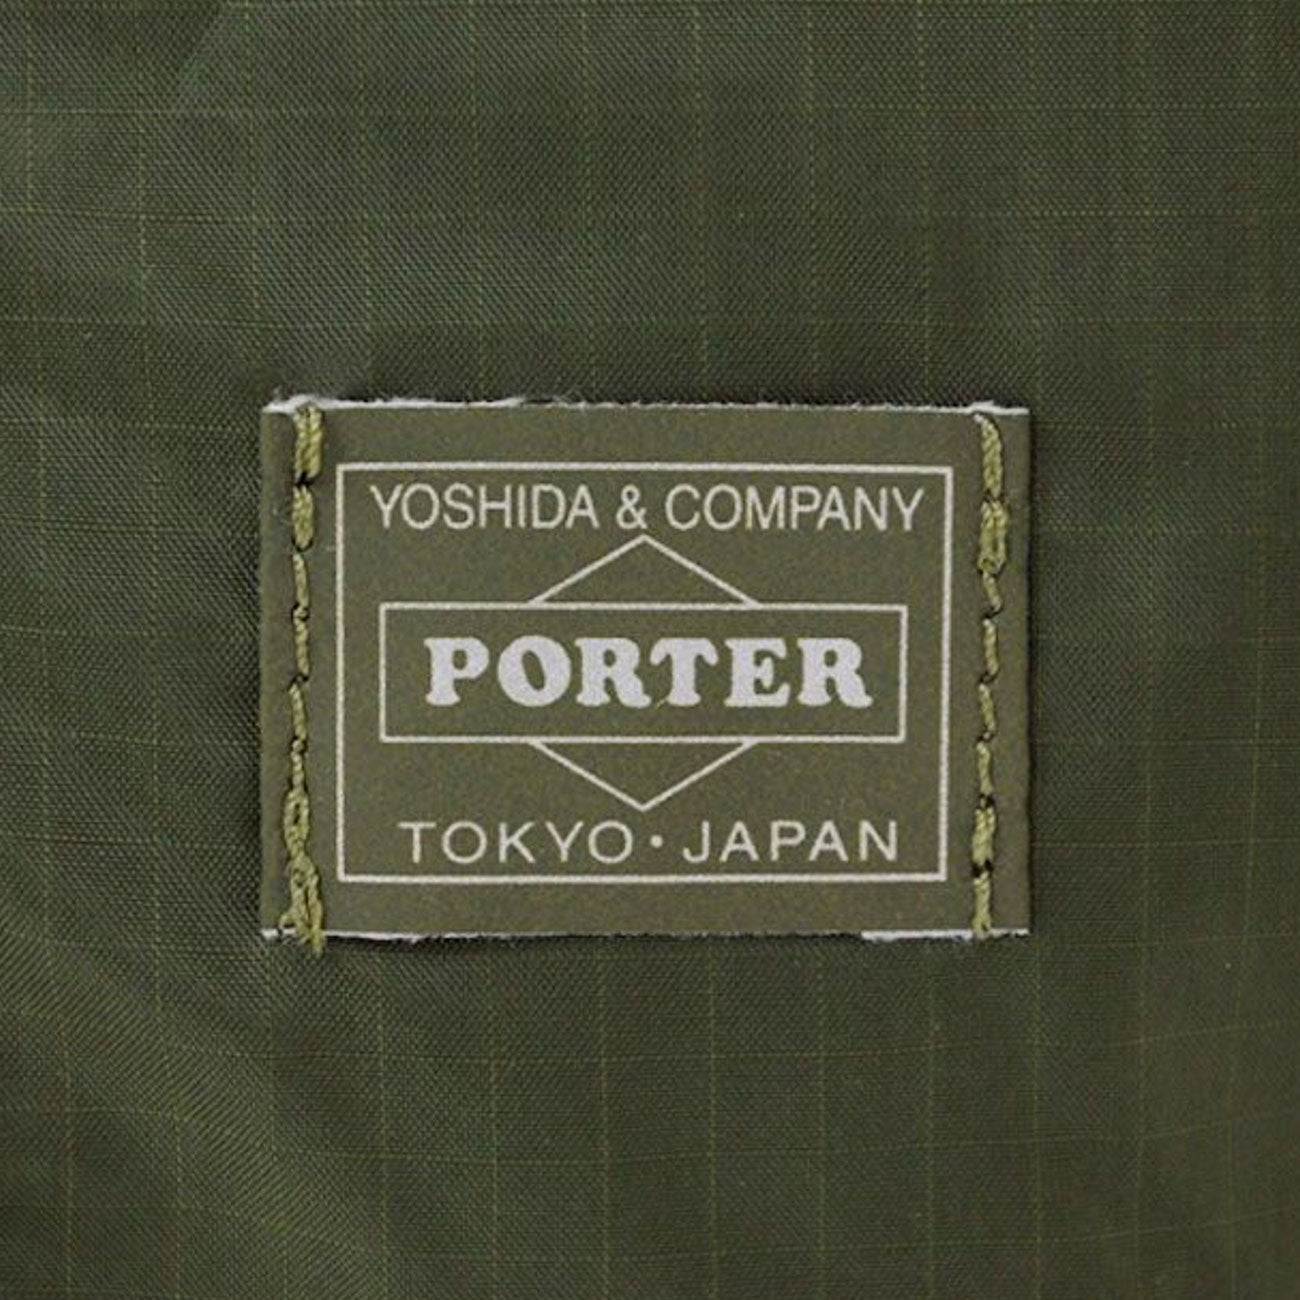 Porter By Yoshida Flex 2 Way Tote Bag (Oliv)  - Cheap Witzenberg Jordan Outlet